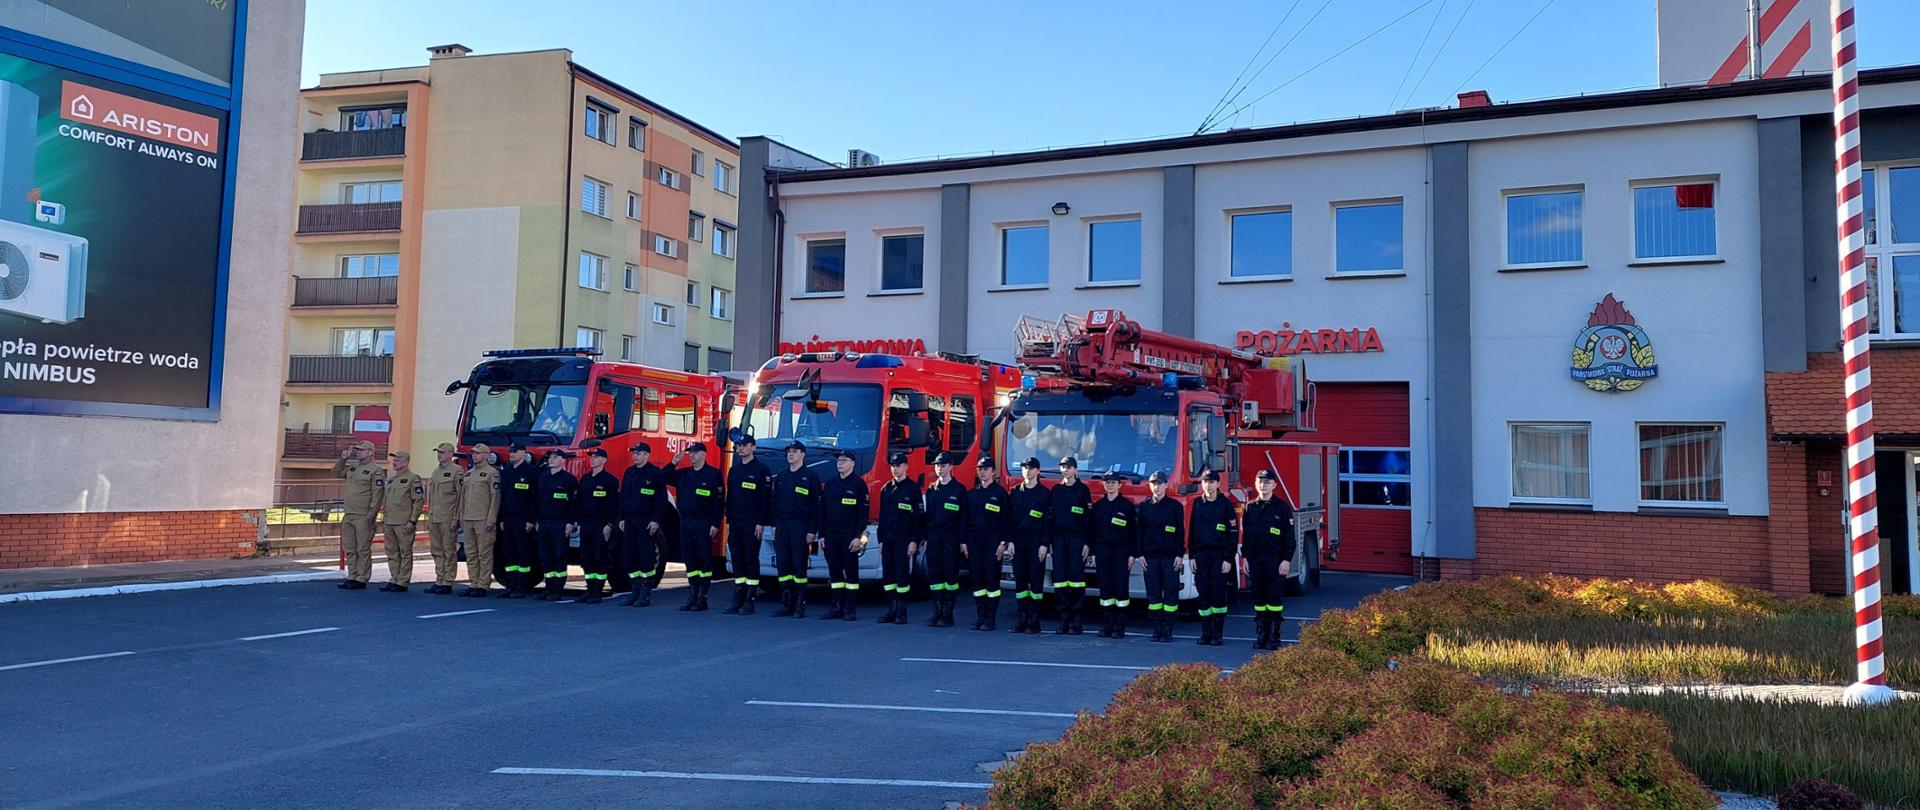 Zdjęcie ukazuje strażaków oddających hołd dla zmarłego strażaka na tle budynku komendy w Krotoszynie